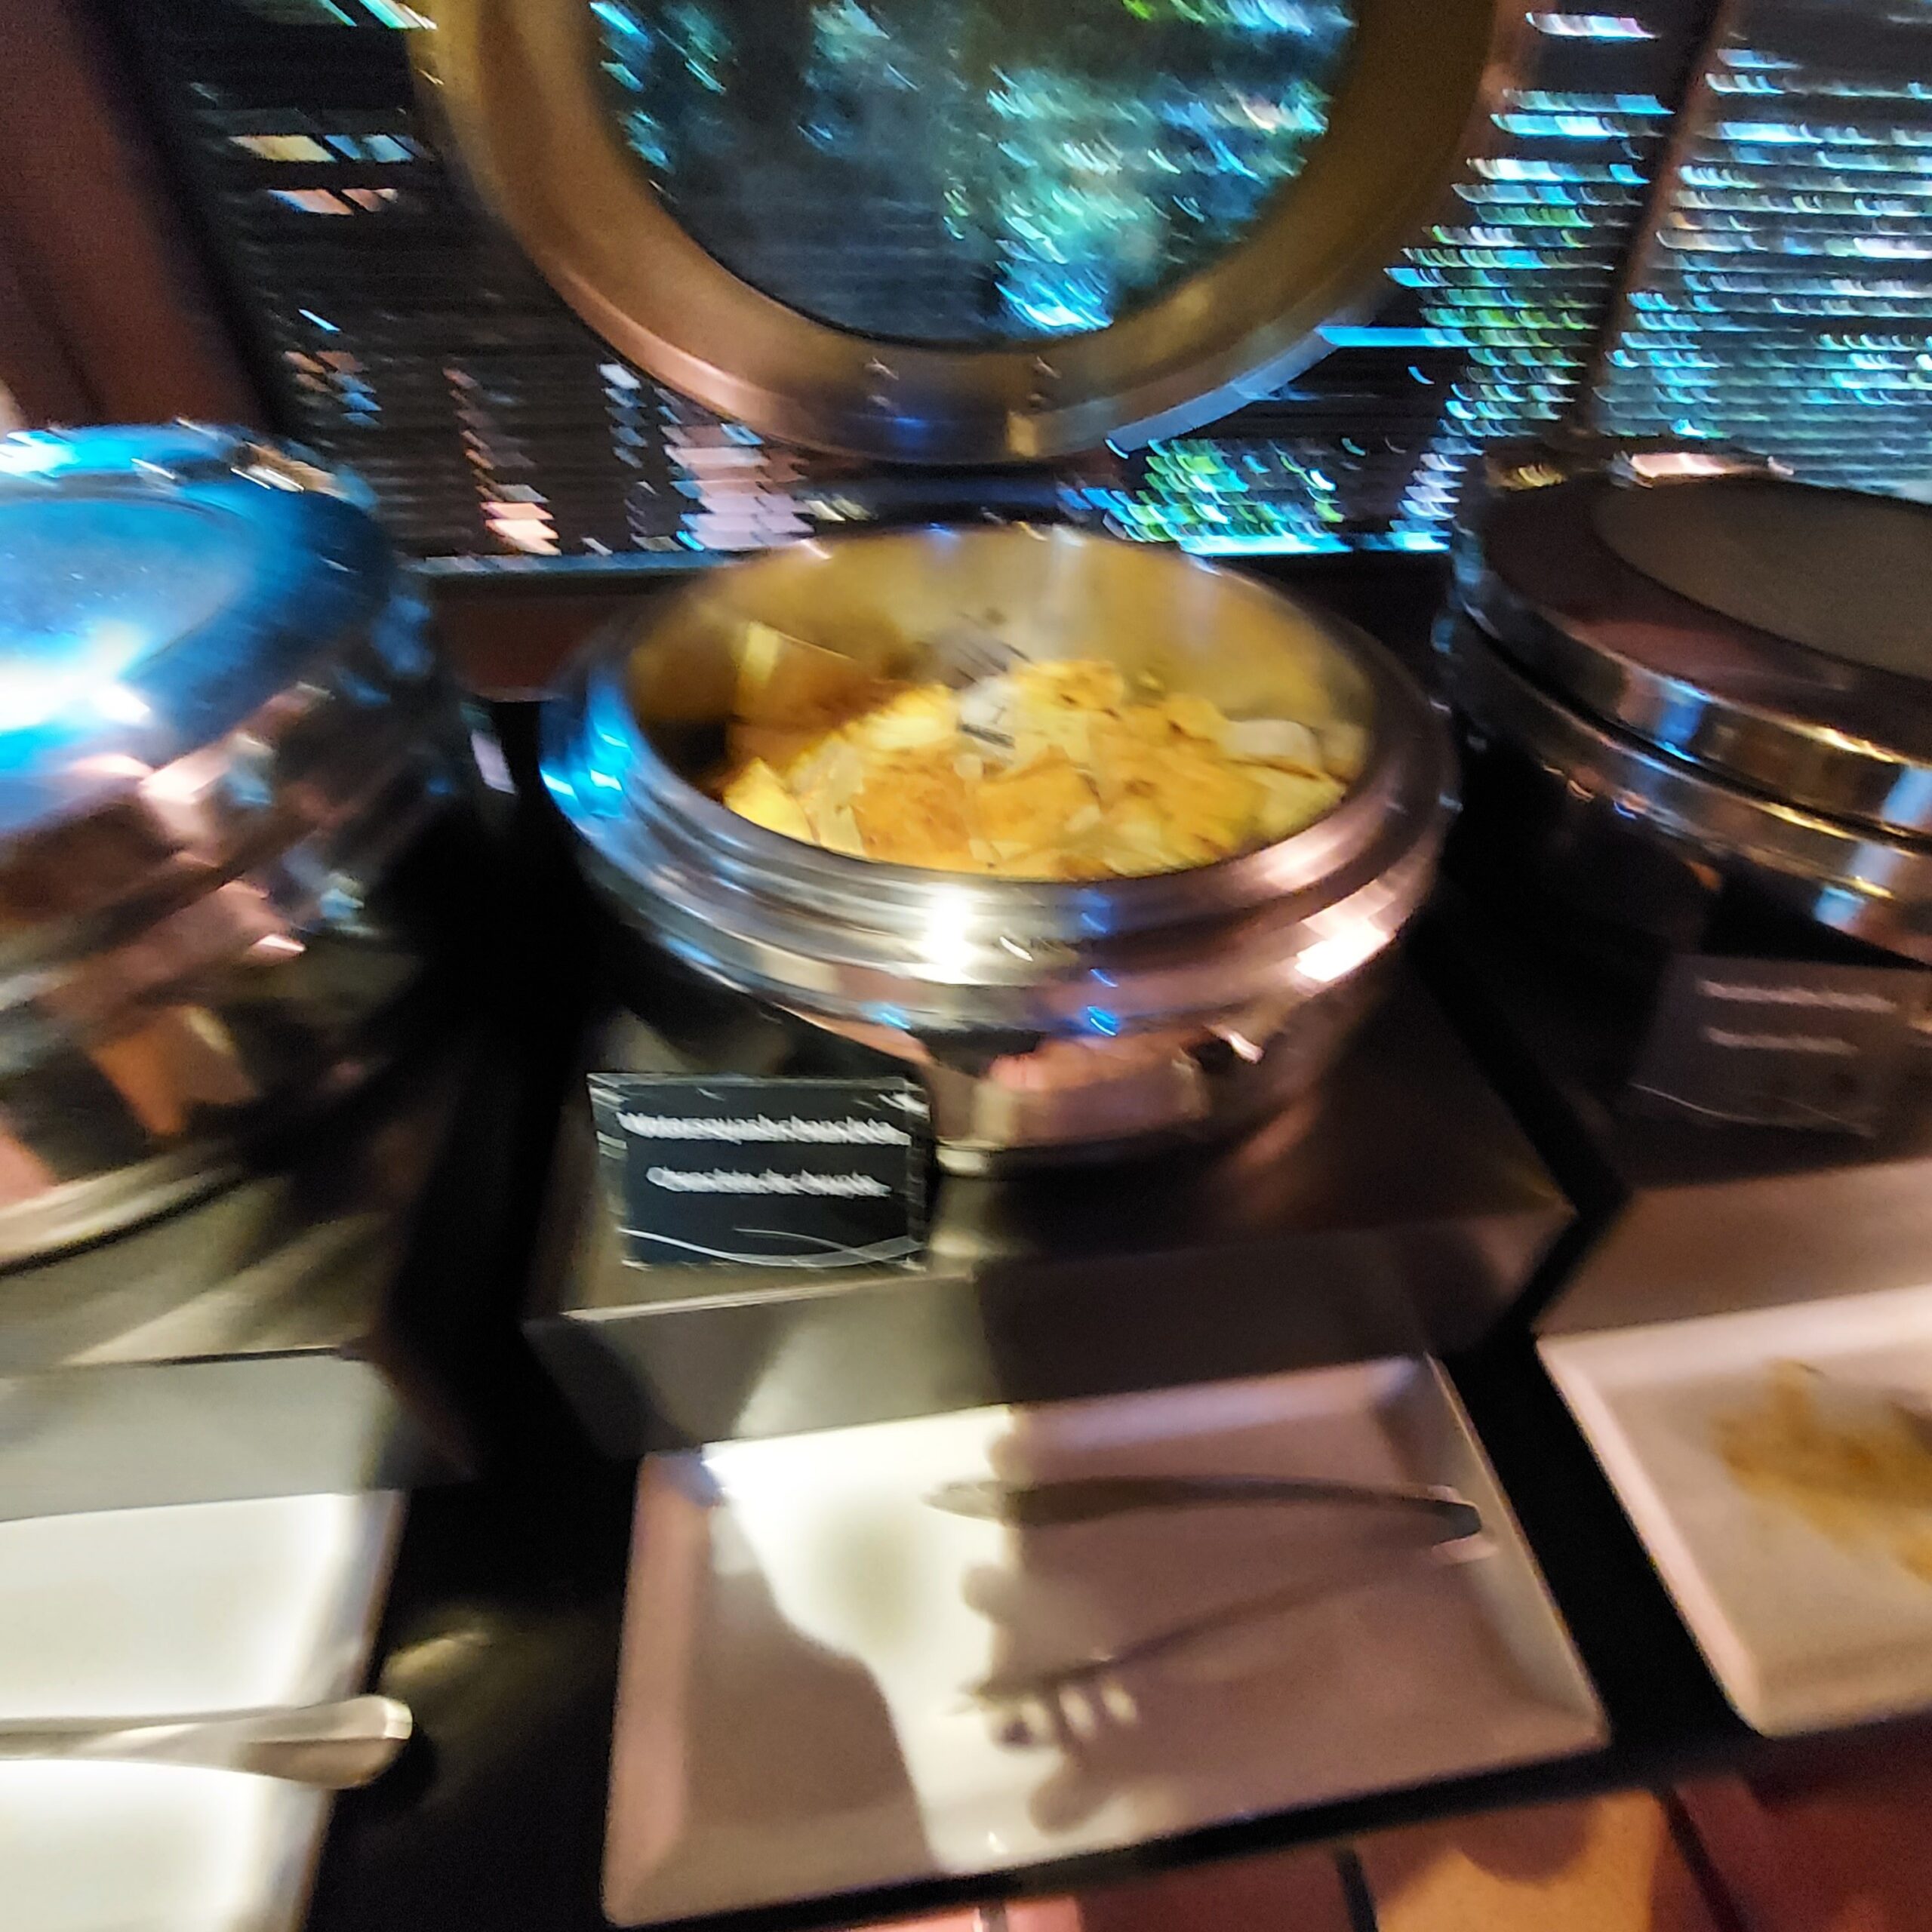 テーブルの上に置かれた鍋